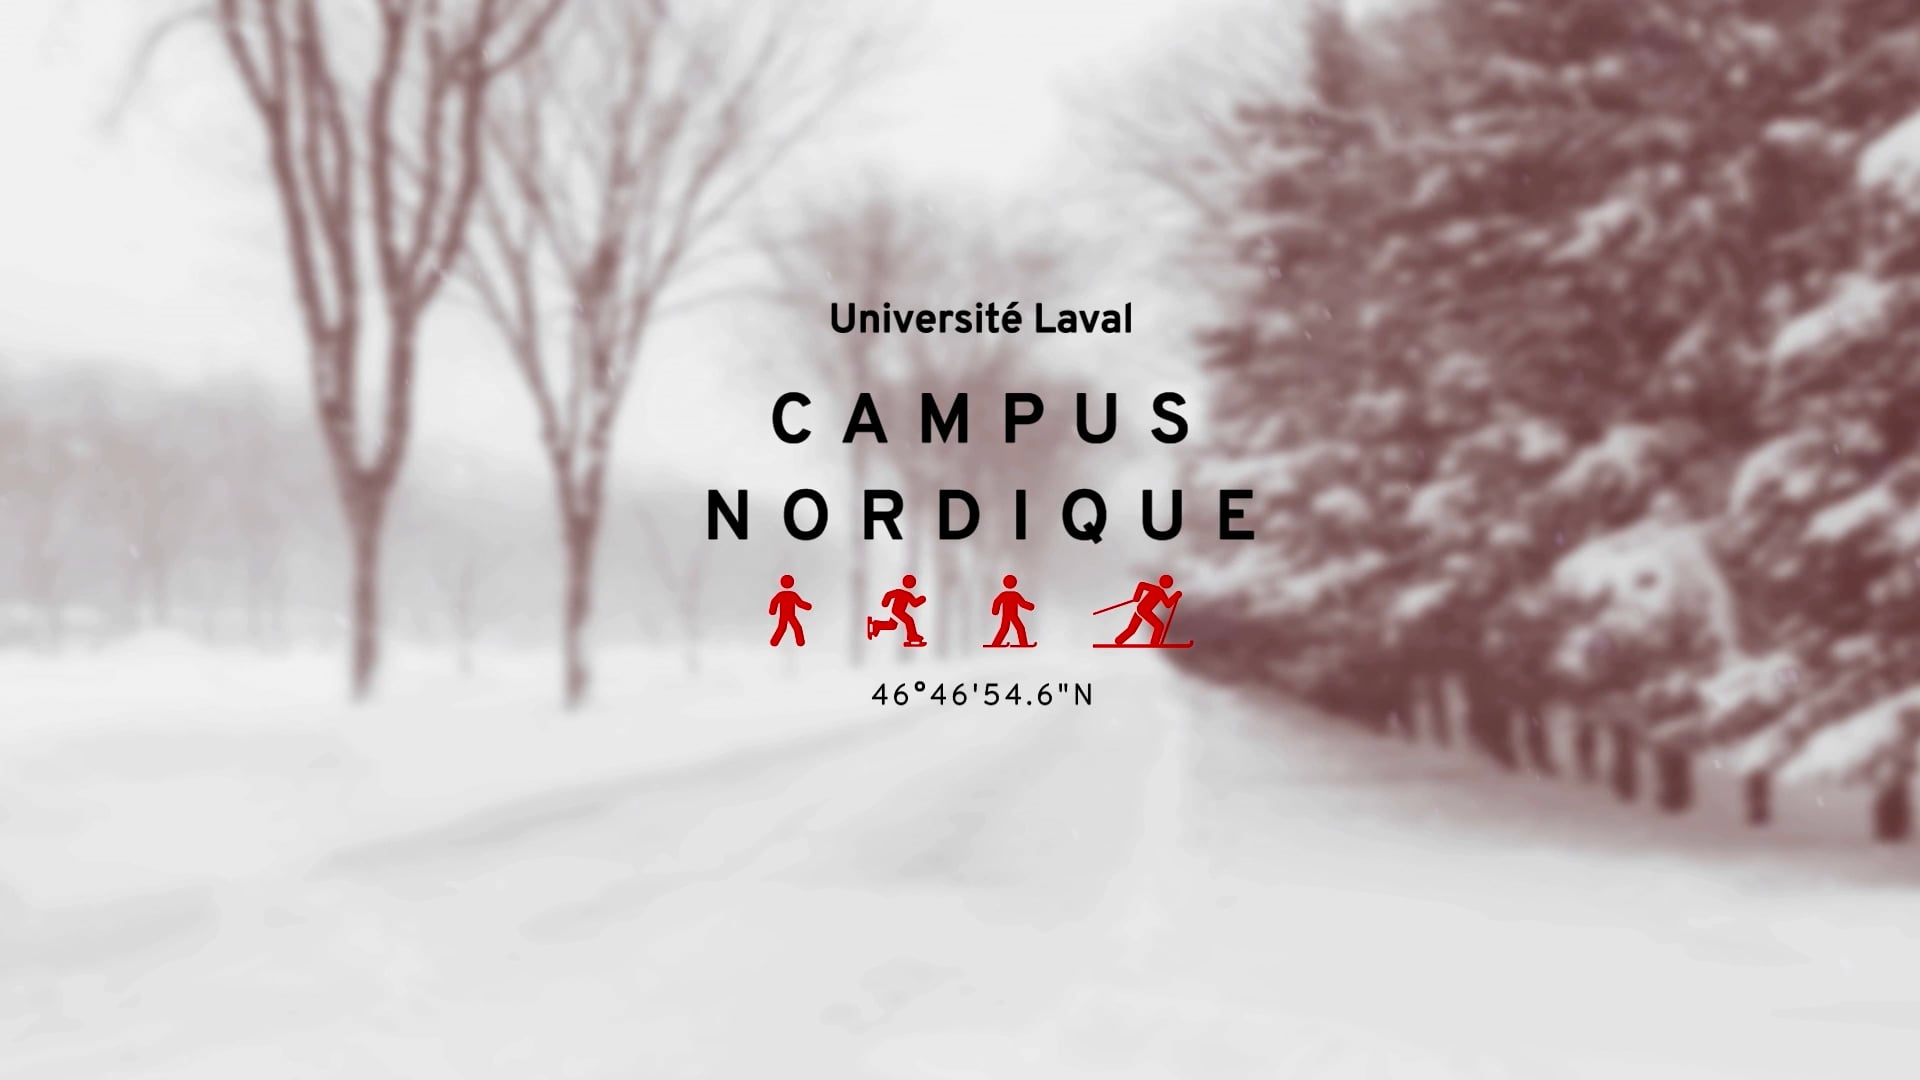 Université Laval - Campus nordique 2022